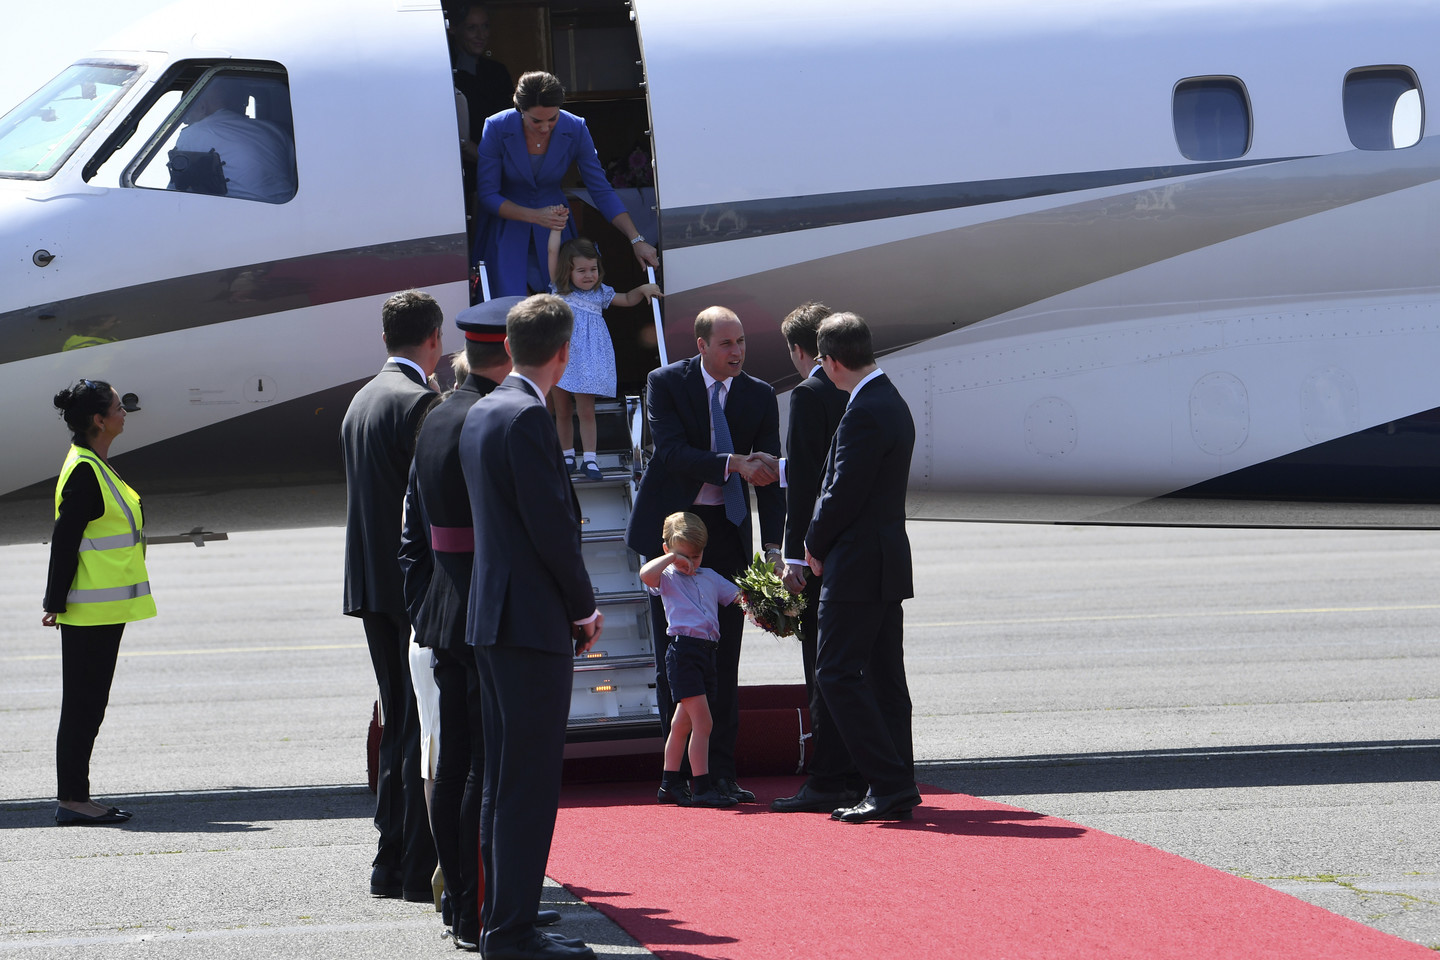  Princas Williamas ir jo žmona Catherine bei vaikais trečiadienį atvyko trijų dienų vizitui į Vokietiją.<br> AP nuotr.